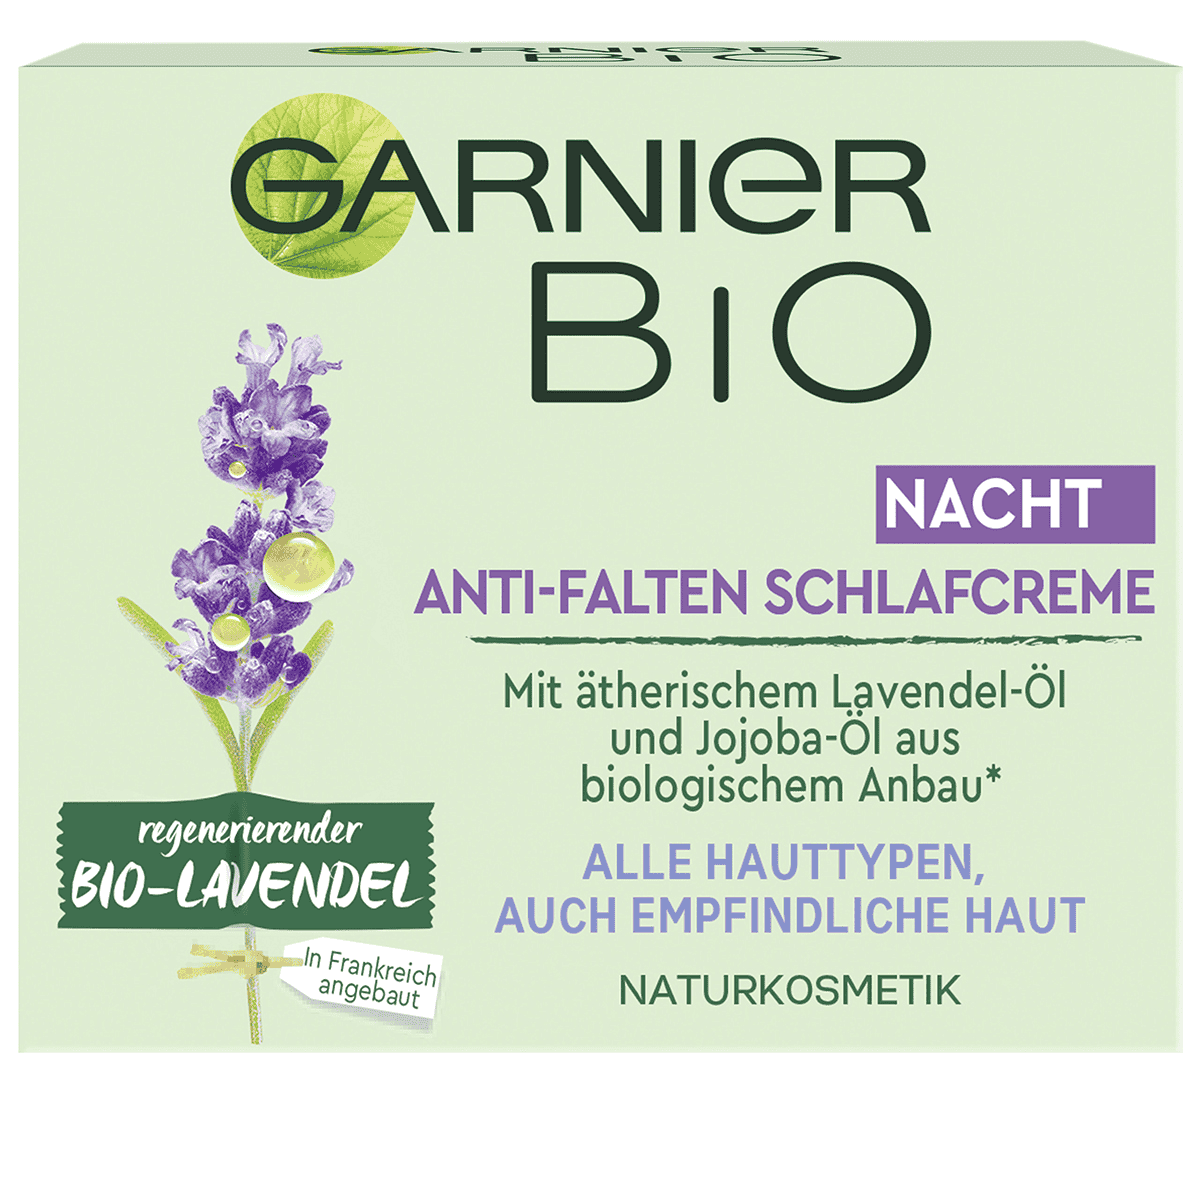 Anti-Falten • Lavendel Nachtpflege • Garnier